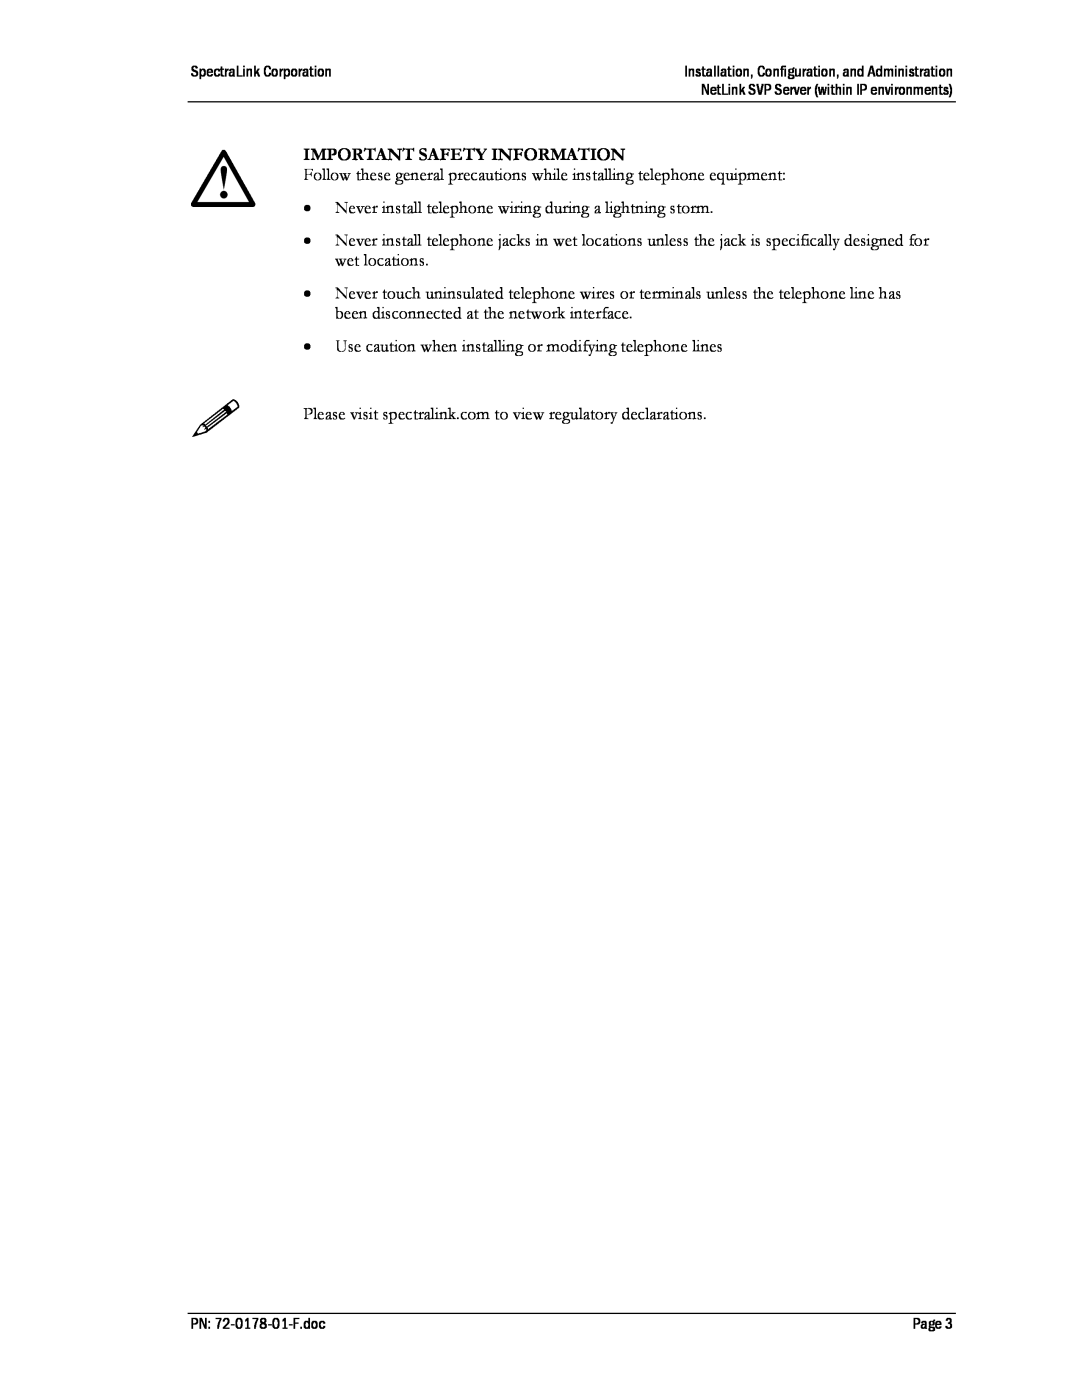 SpectraLink SVP020, SVP100, SVP010 manual Important Safety Information 